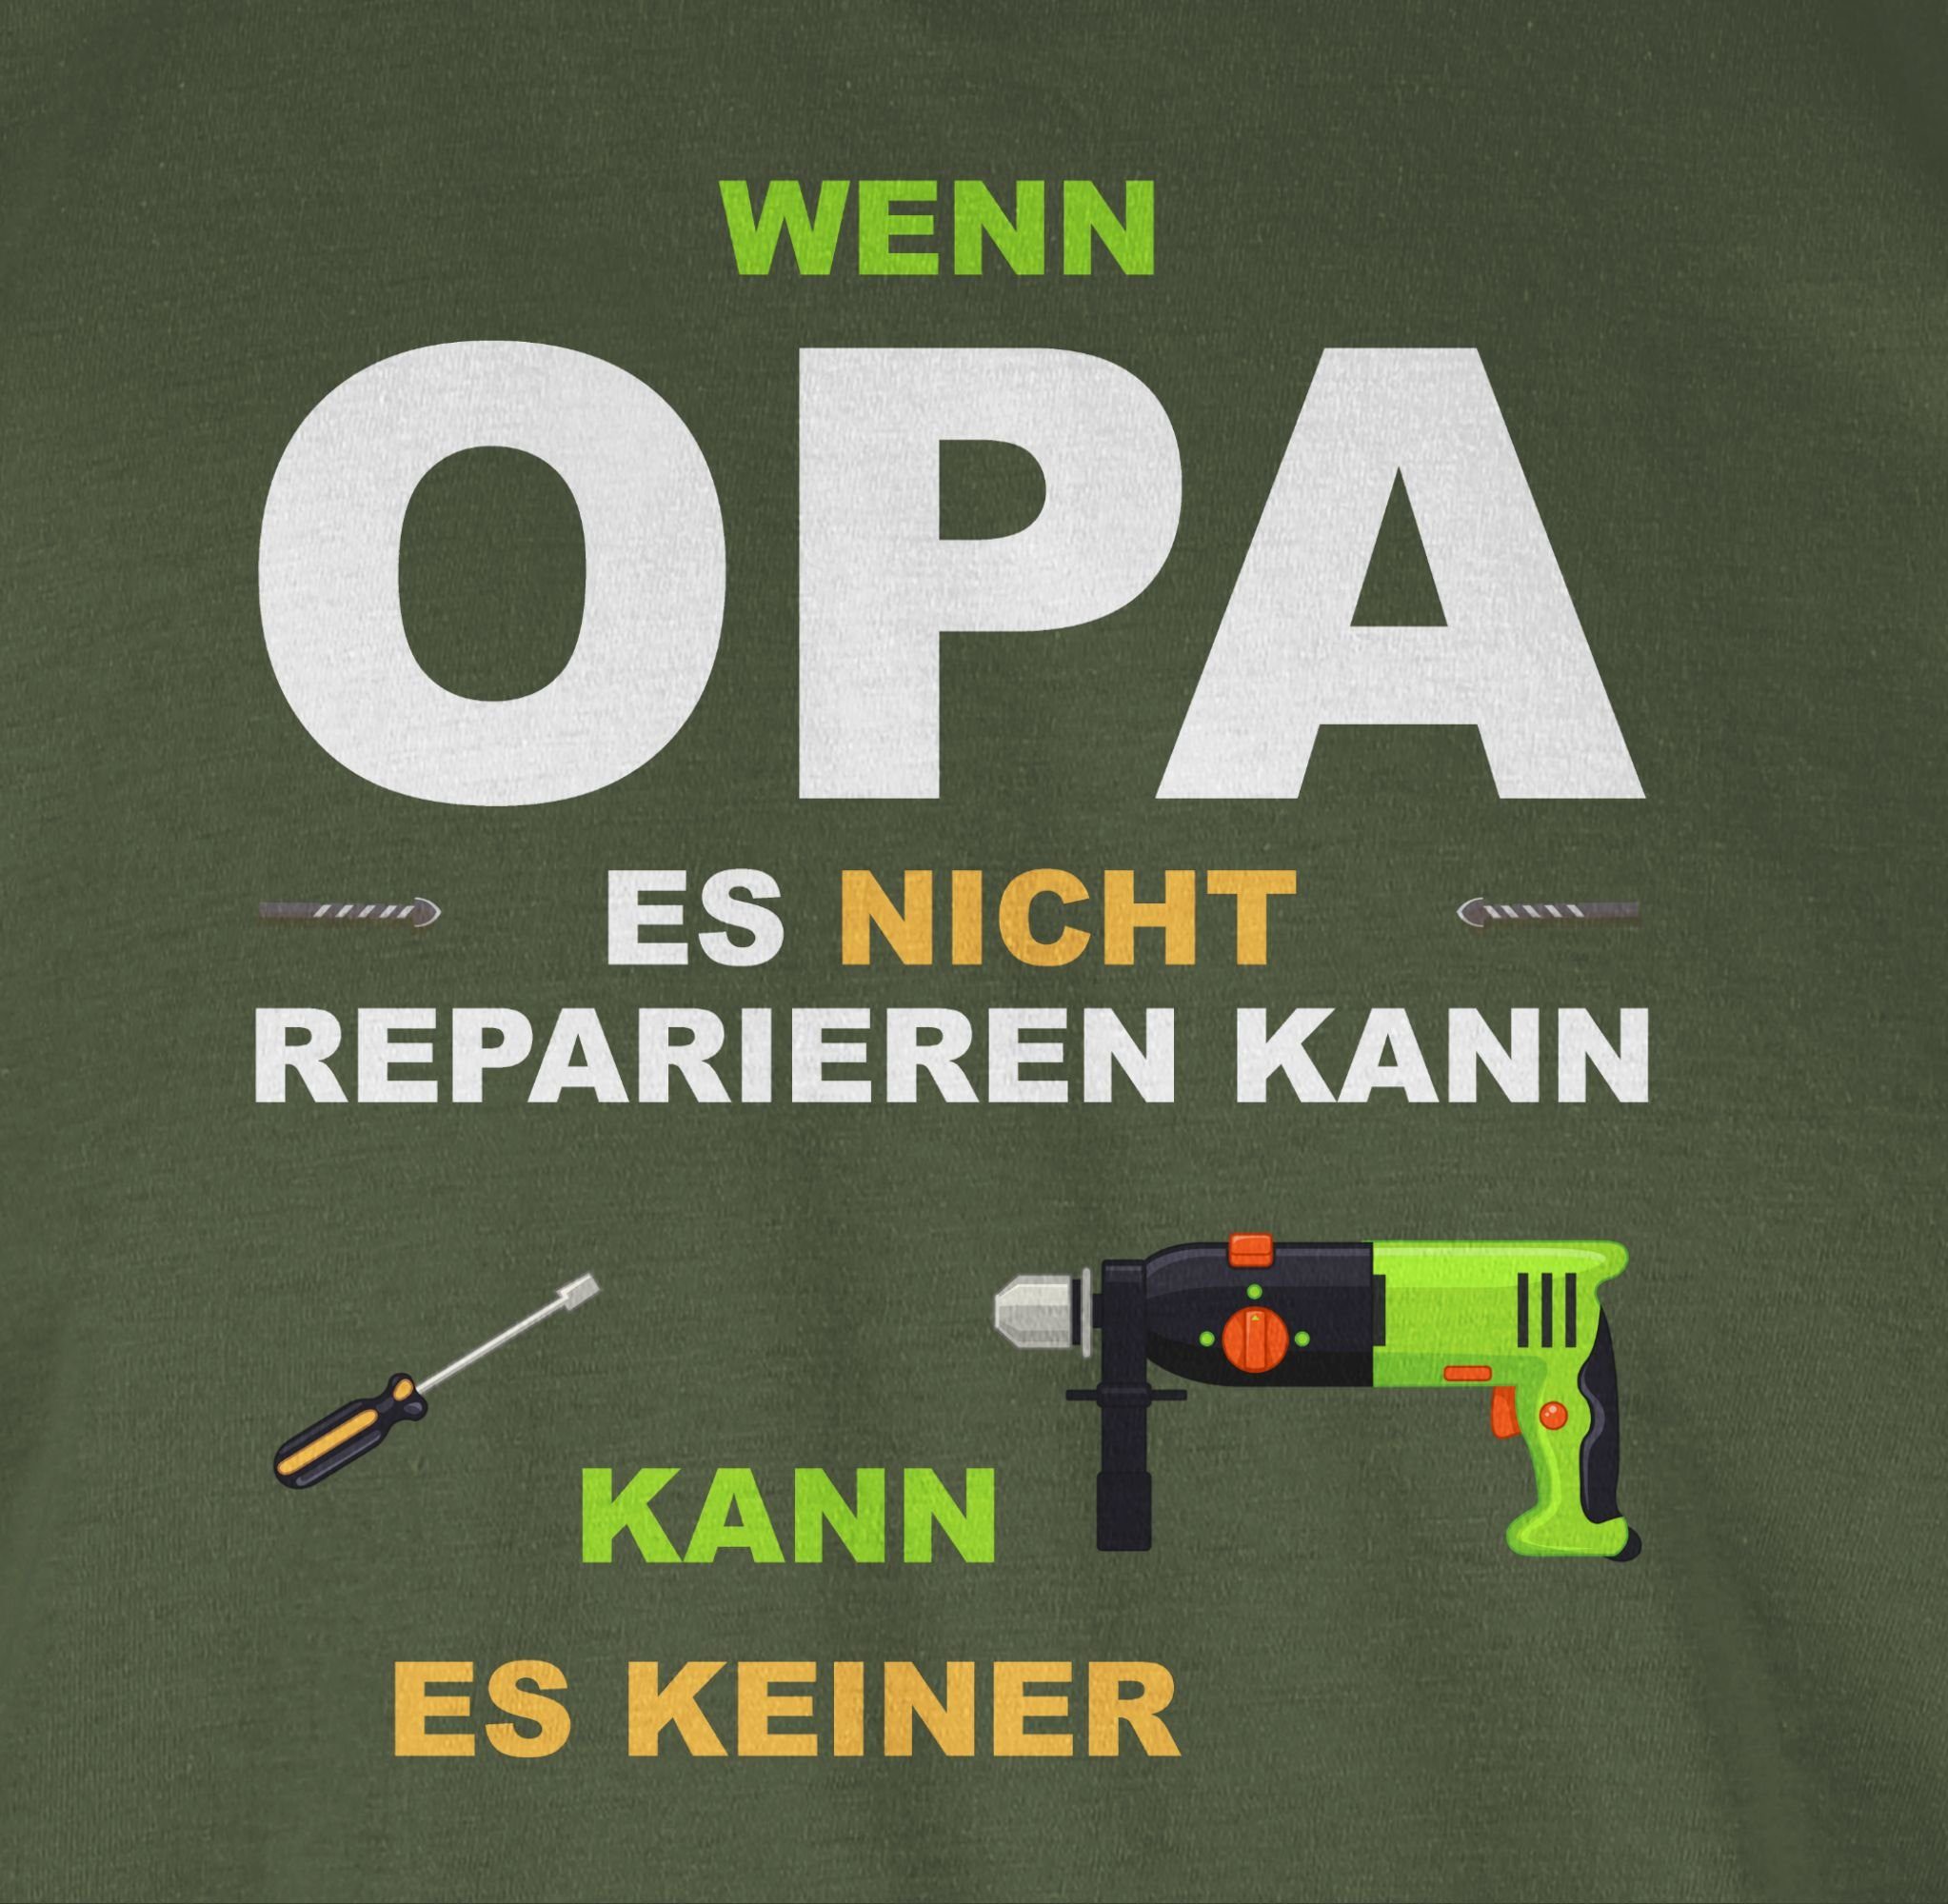 Shirtracer T-Shirt Opa reparieren Geschenke es Wenn keiner kann kann es 3 Army nicht Grün Opa